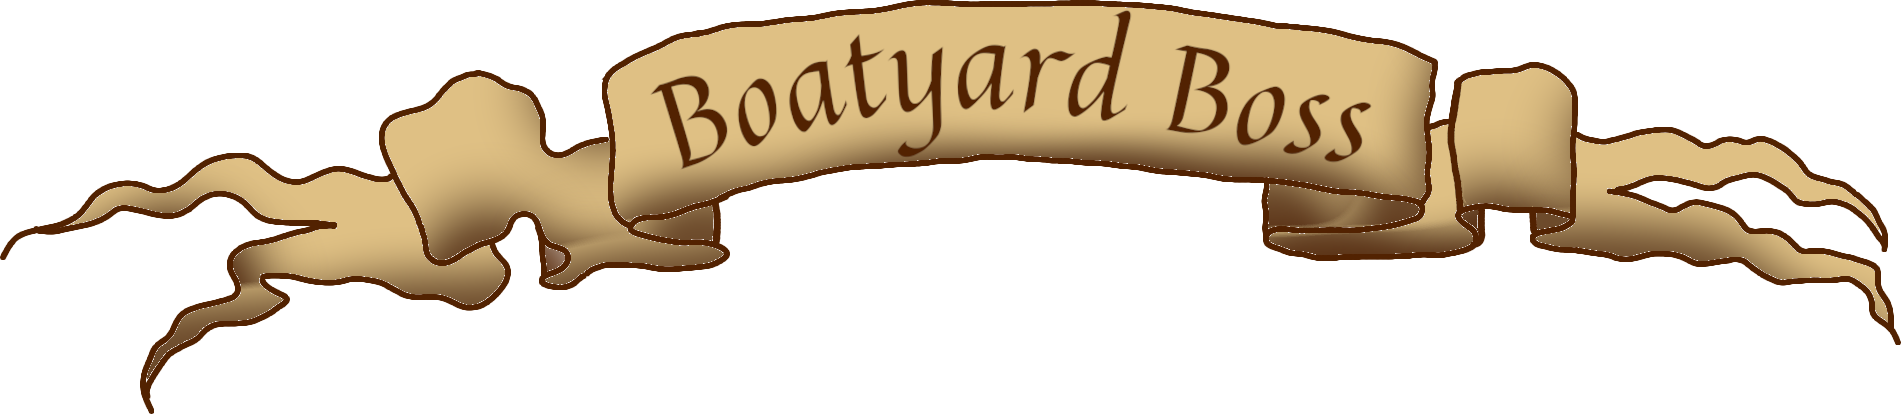 Boatyard Boss